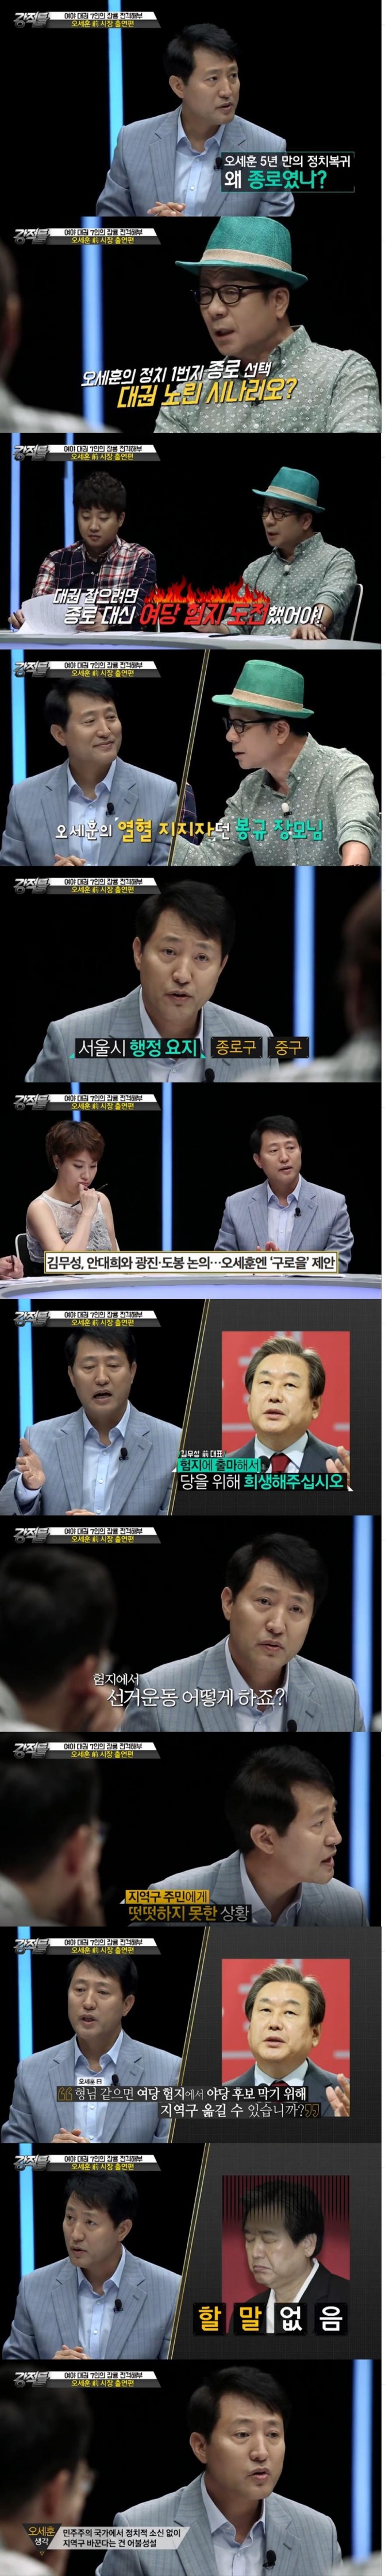 21일 밤 방송된 TV조선 '강적들'에서는 오세훈 전 시장이 출연해 대권 후보설에 대한 견해를 밝혔다./사진=TV조선 방송 캡처